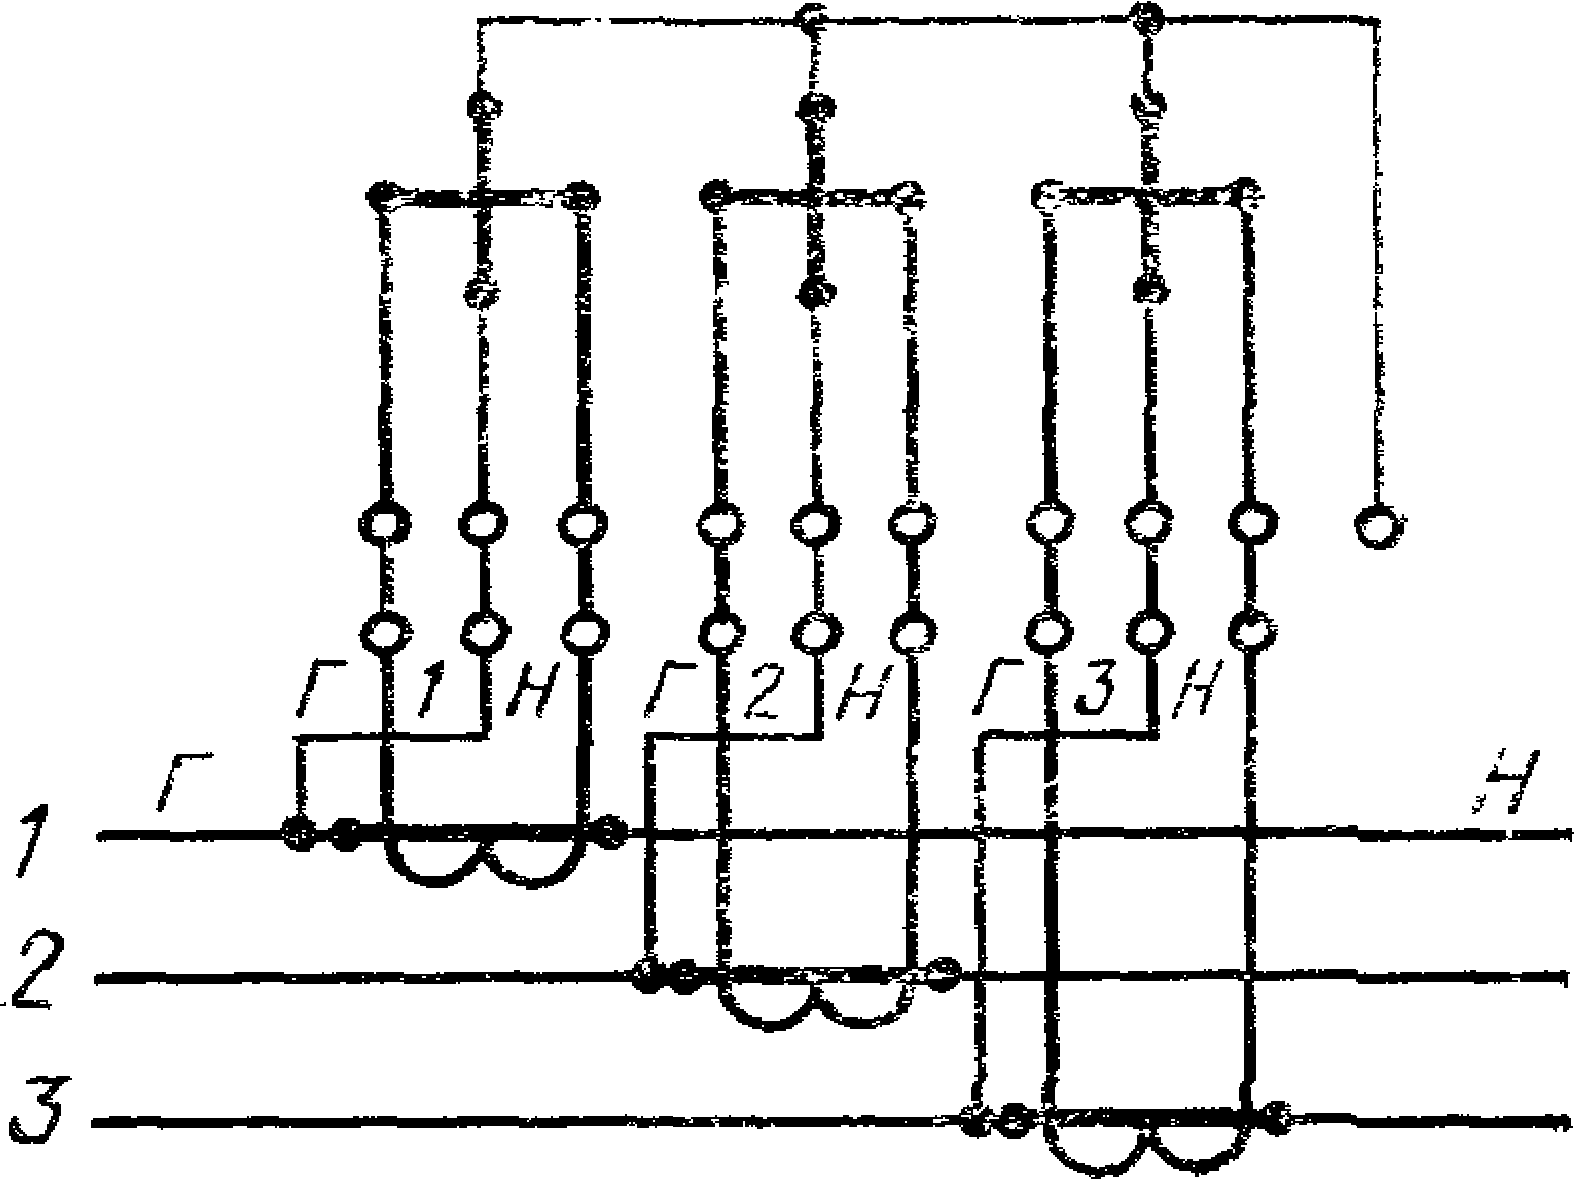 Подключение трансформатора тока к счетчику. Схема подключения счетчика через трансформаторы тока 0.4кв. Схема расключения трансформаторов тока и счетчика. Схема подключения электросчетчика через трансформаторы тока. Схема подключения трехфазного счетчика через трансформаторы тока.